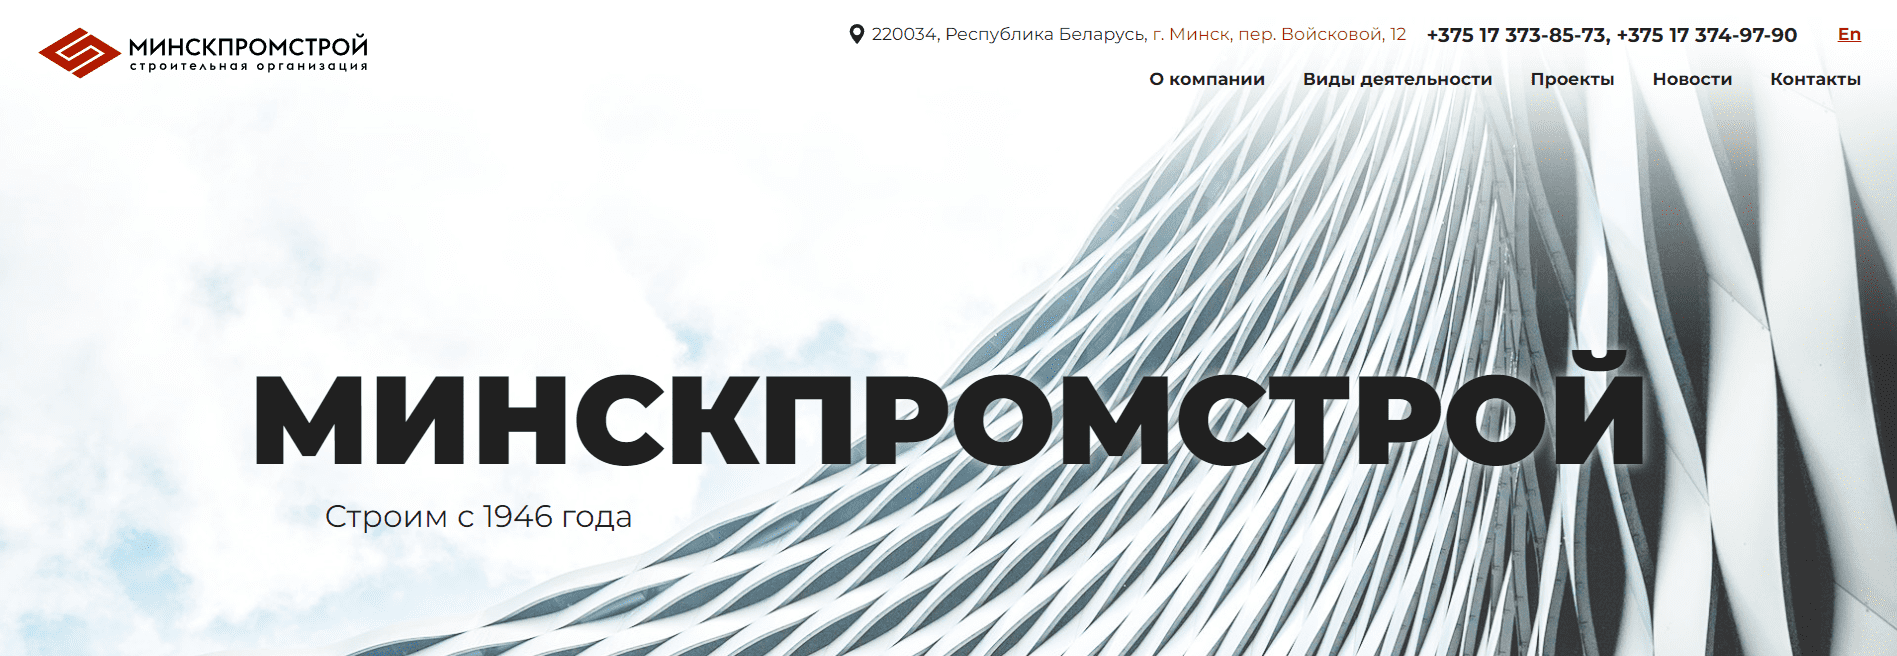 Минскпромстрой (minskpromstroy.by) - официальный сайт